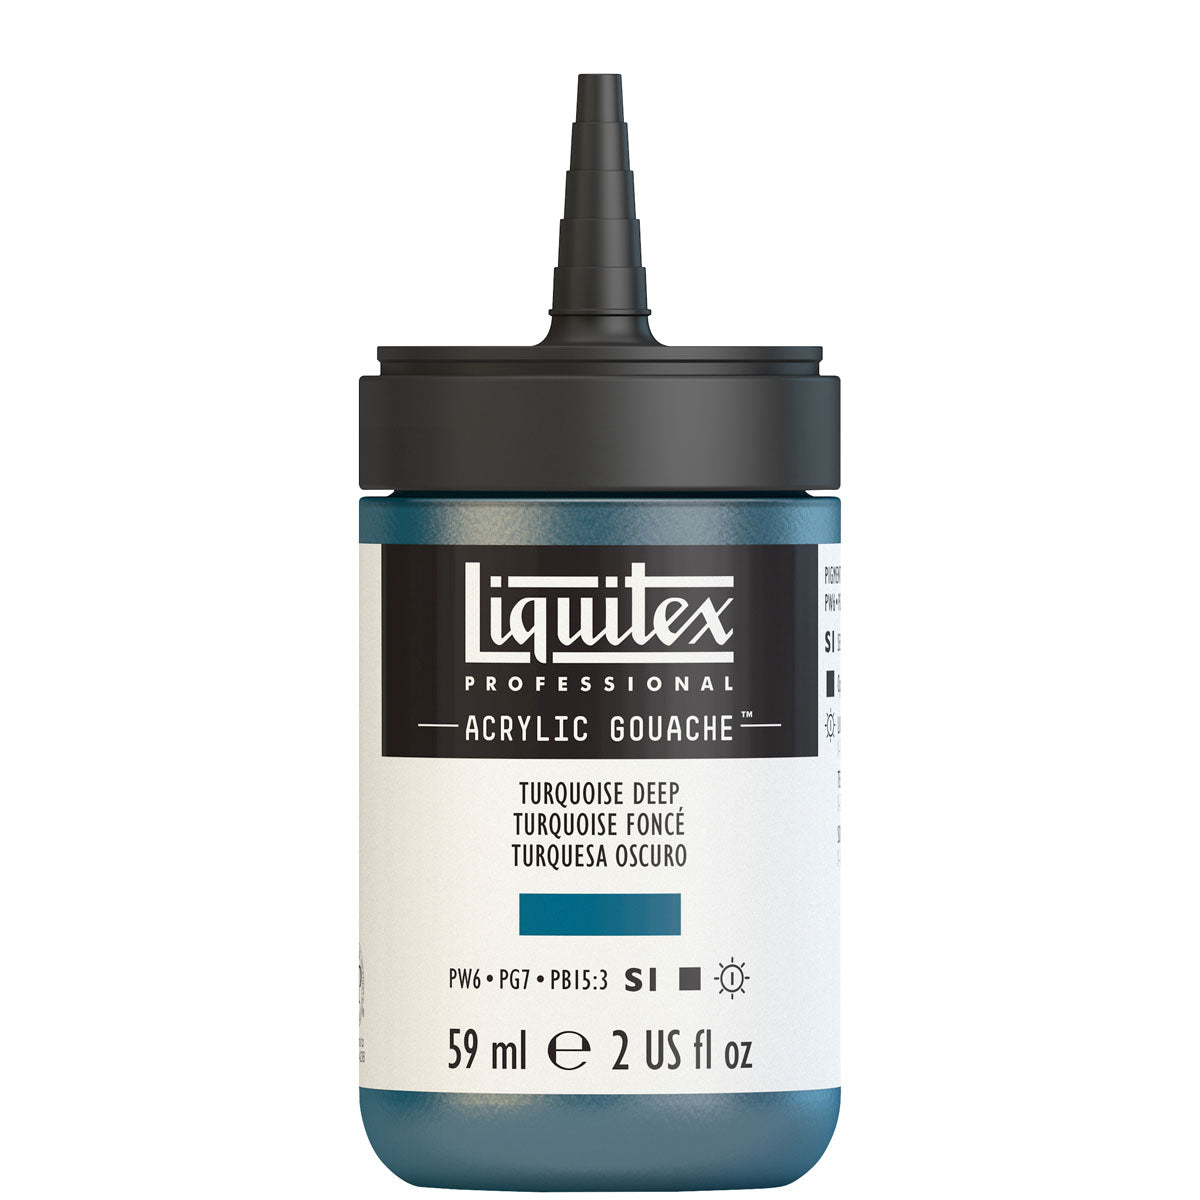 Liquitex-Gouache Acrylique 59ml S1 - Turquoise Foncé